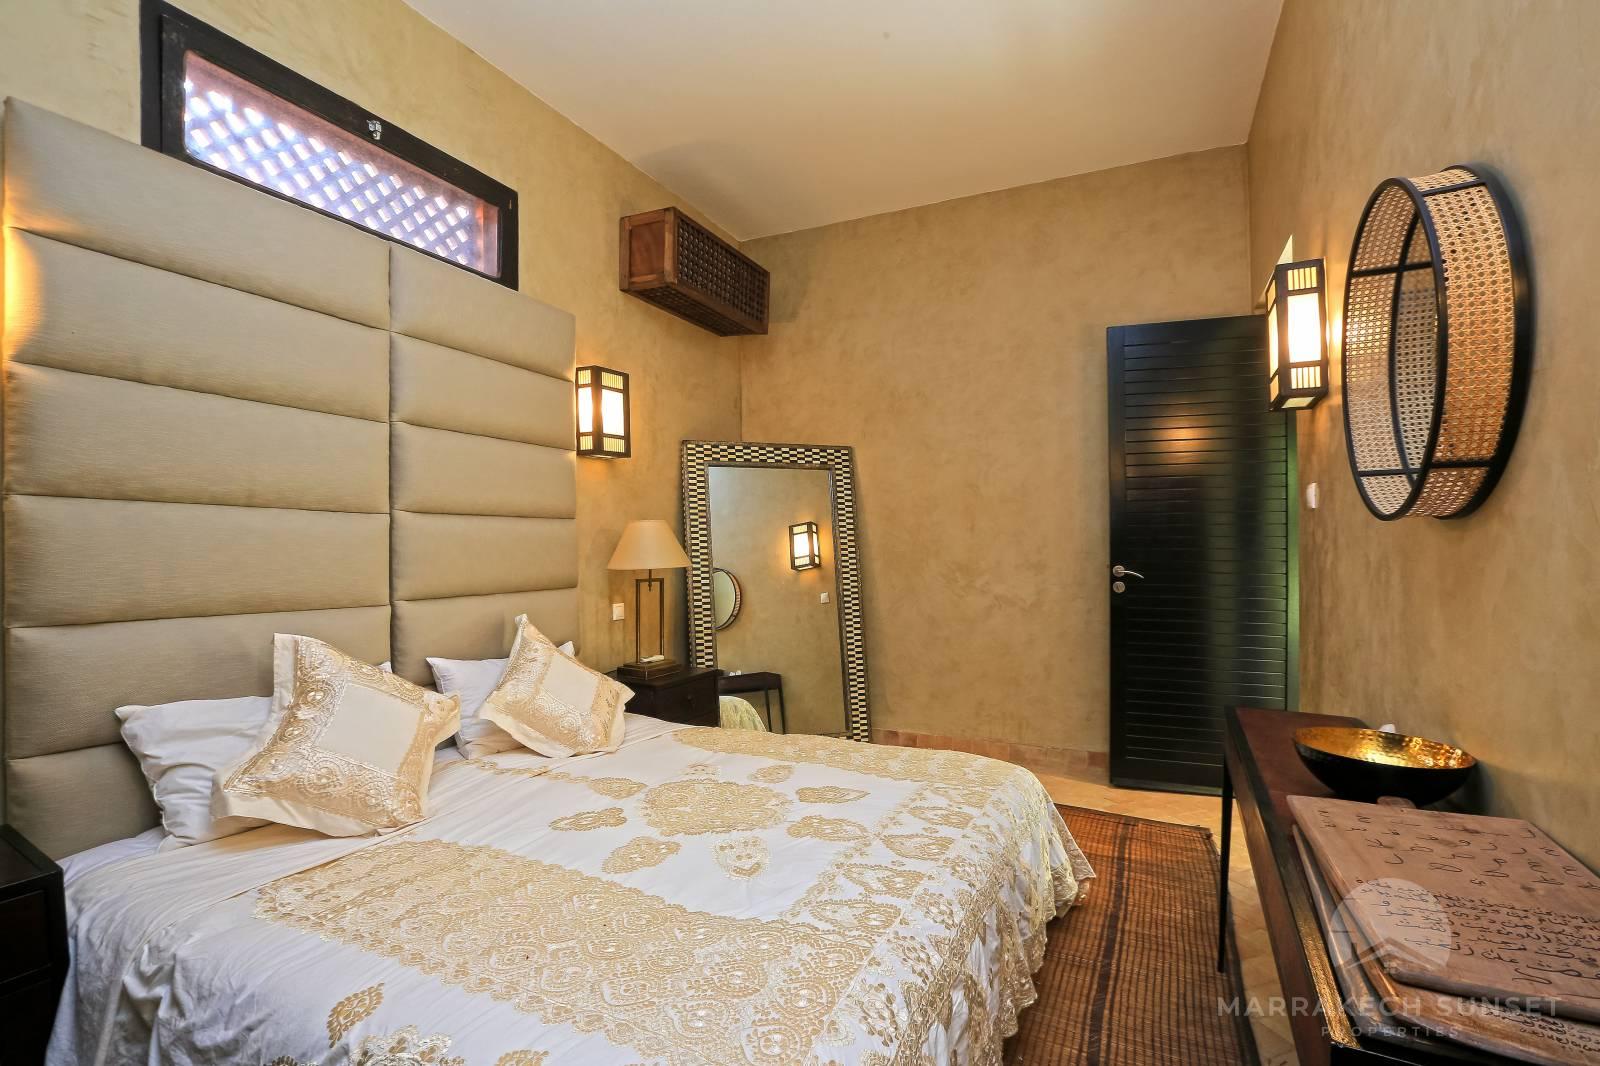 Élégante villa de style Riad de 3 chambres à louer